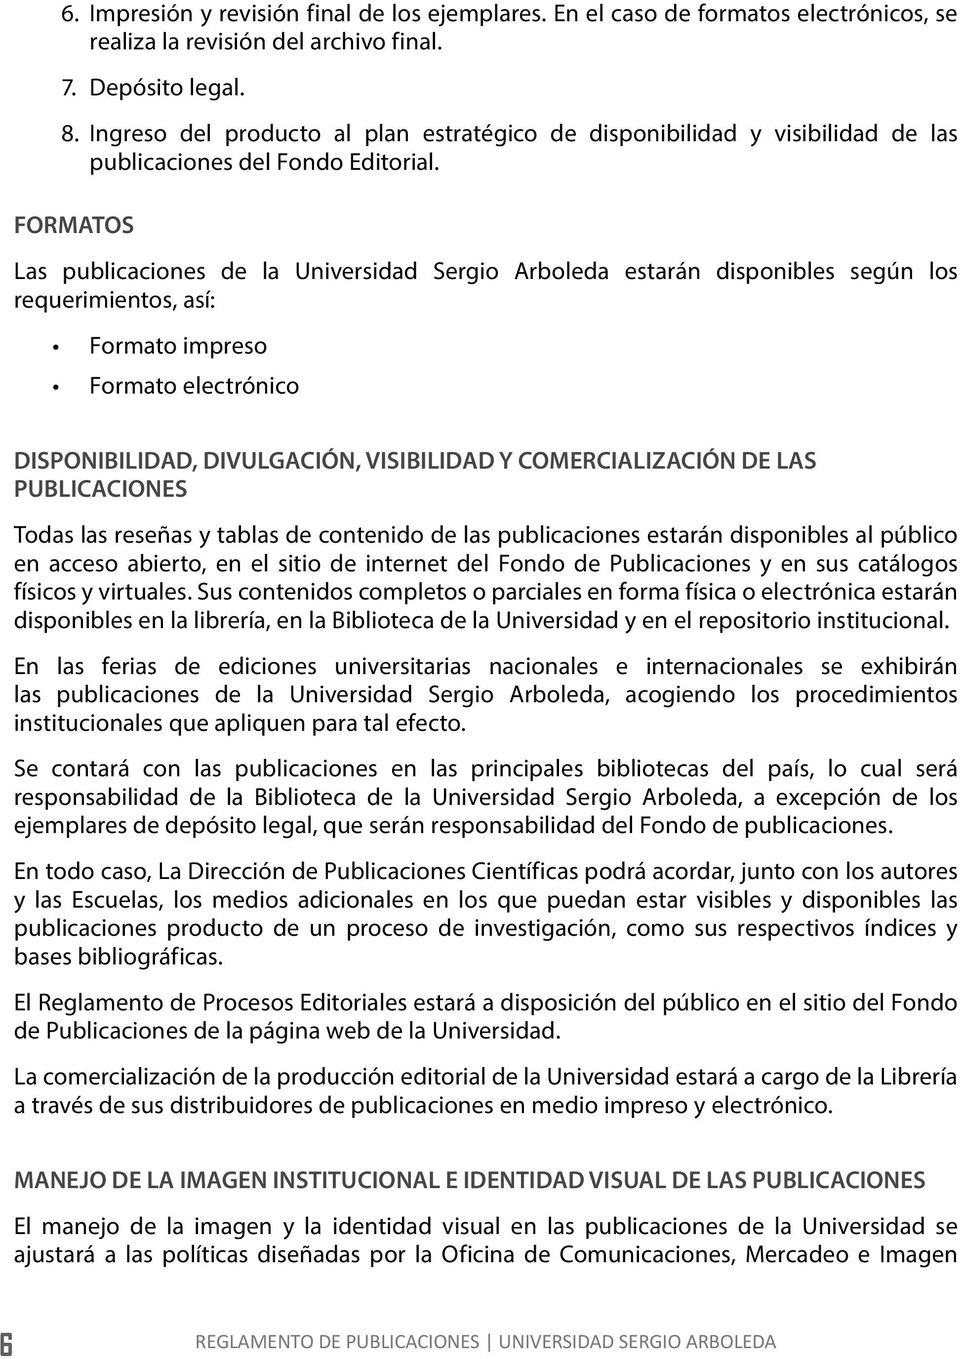 FORMATOS Las publicaciones de la Universidad Sergio Arboleda estarán disponibles según los requerimientos, así: Formato impreso Formato electrónico DISPONIBILIDAD, DIVULGACIÓN, VISIBILIDAD Y